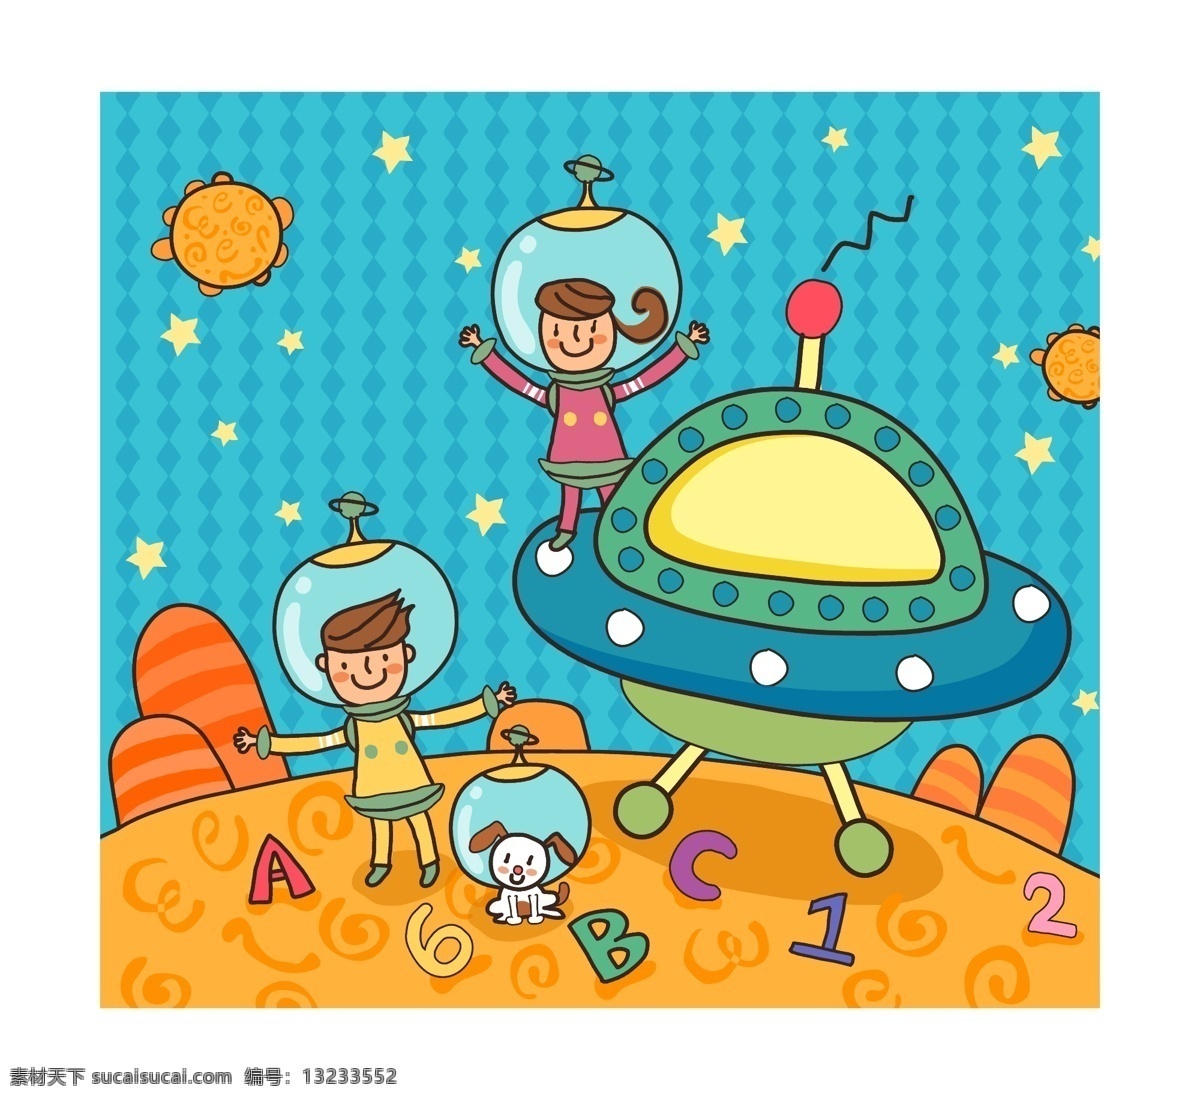 外星人 机器人 宇宙人 机器人玩具 卡通机器人 儿童 儿童玩具 学校 校园 儿童绘画 快乐儿童 卡通插画 卡通人物 卡通形象 儿童世界 卡通设计 矢量